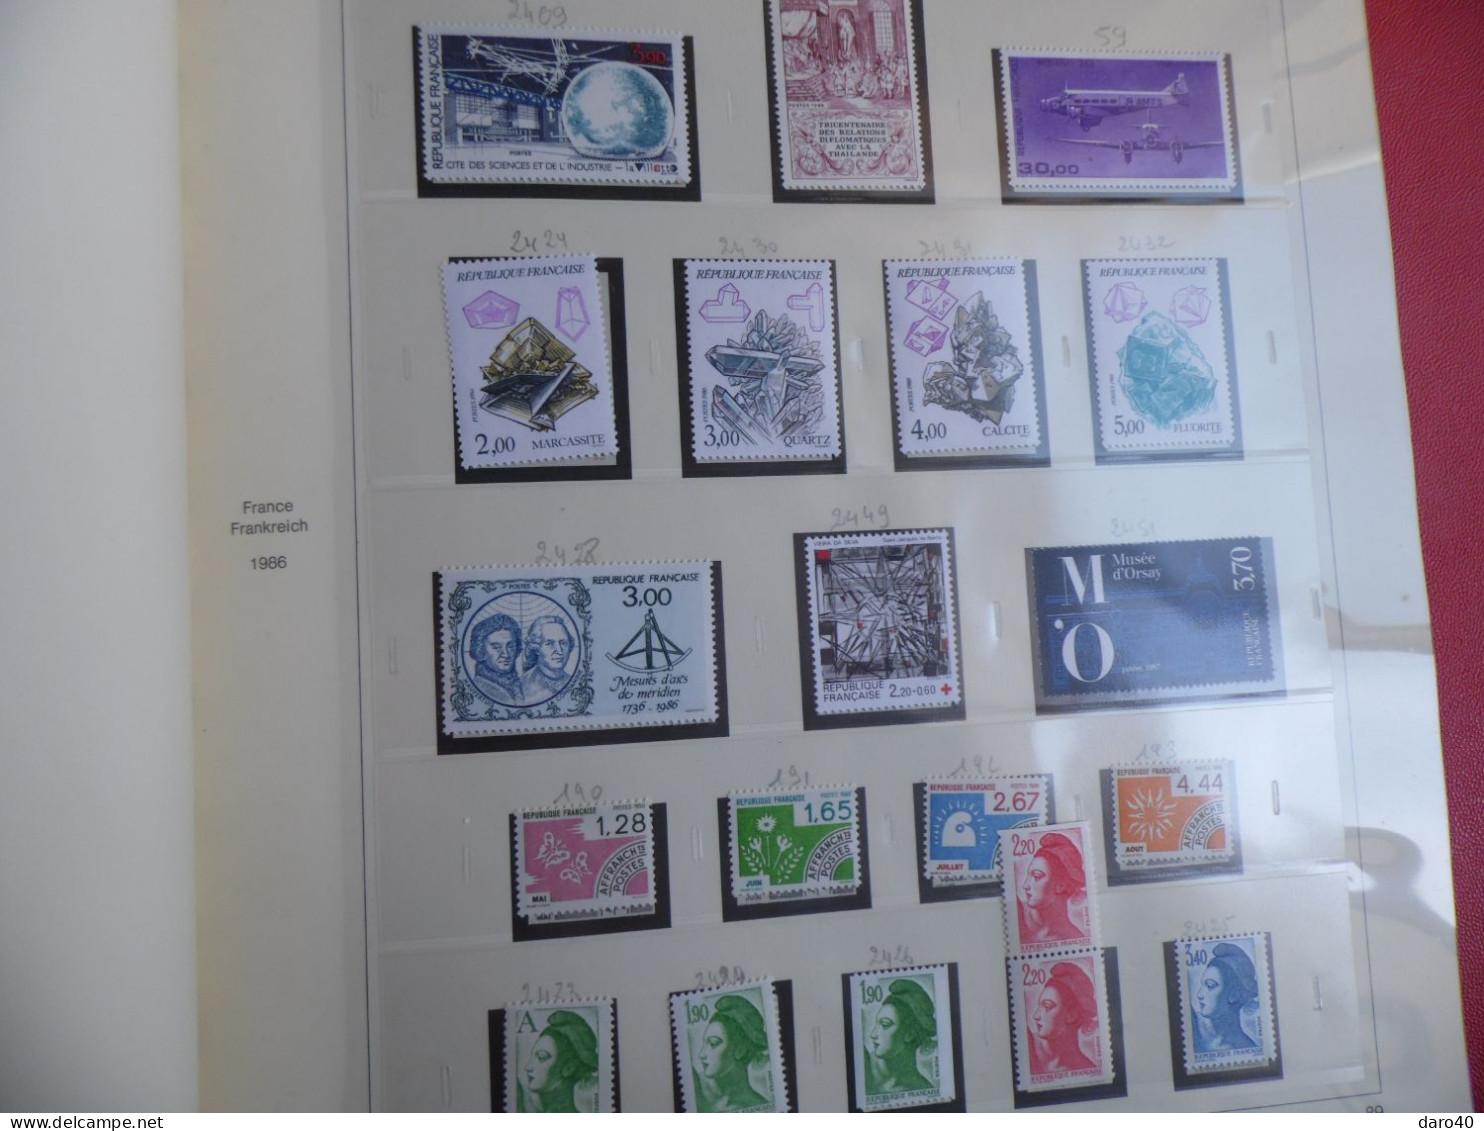 Dans un l'album feuille Safe quelques timbres de France neuf de 1983 à 1986